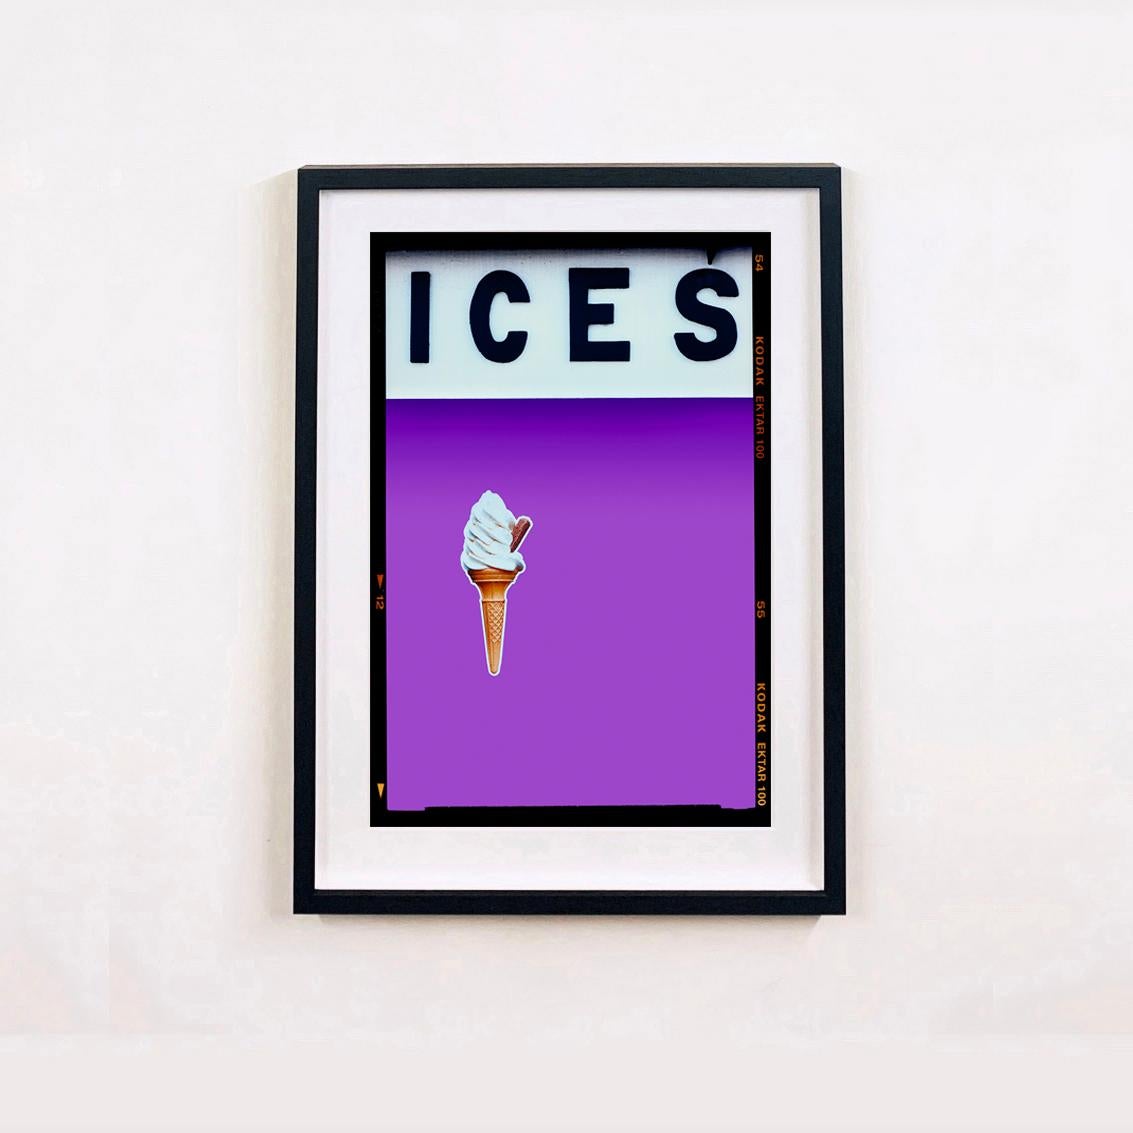 ICES – Vier gerahmte Kunstwerke – Pop-Art-Farbfotografie – Print von Richard Heeps